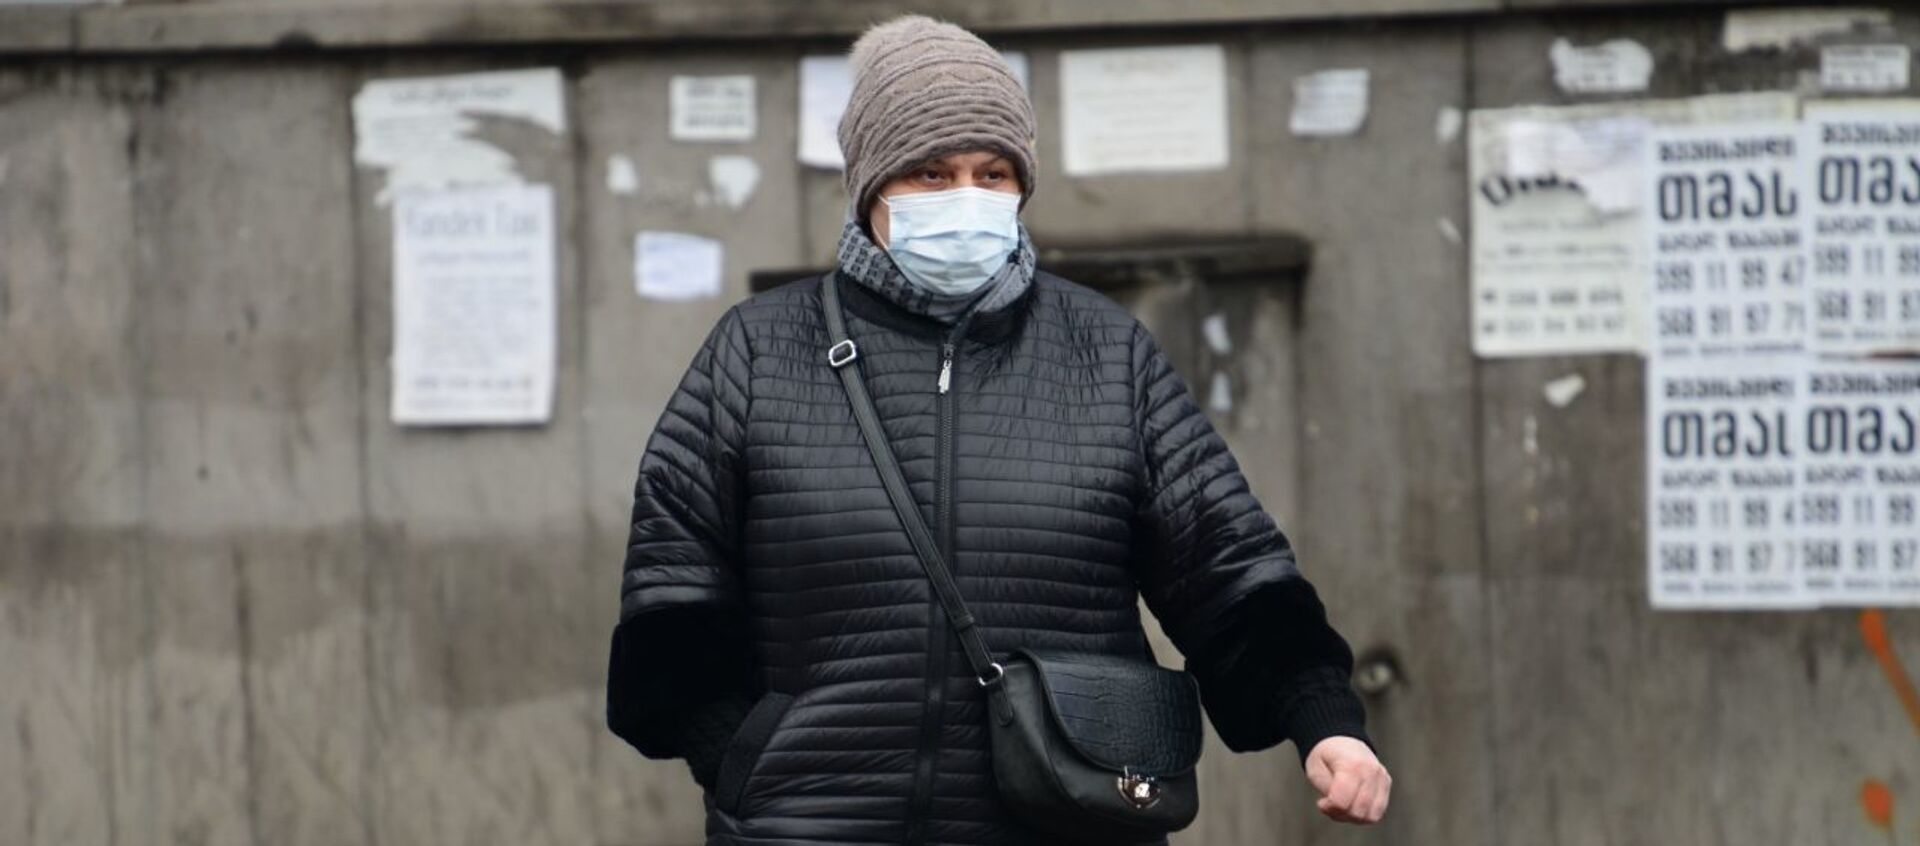 Эпидемия коронавируса - женщина зимой в защитной маске и теплой одежде - Sputnik Грузия, 1920, 14.12.2020